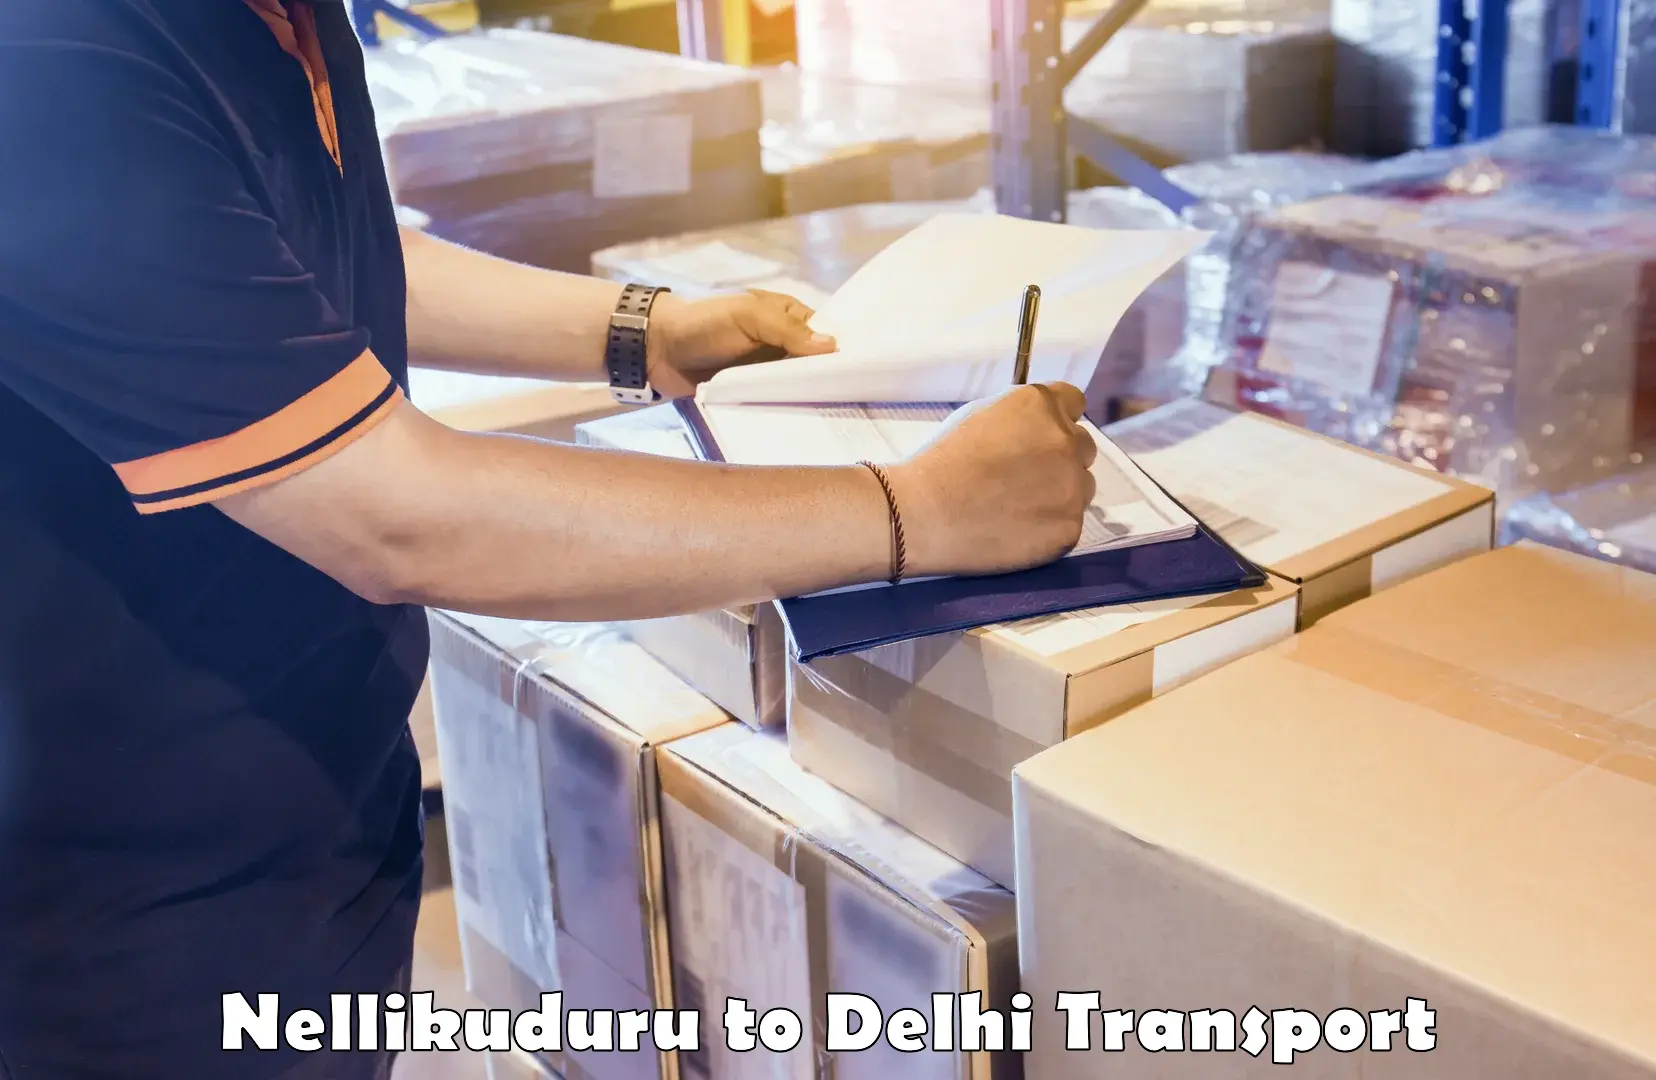 Pick up transport service Nellikuduru to Delhi